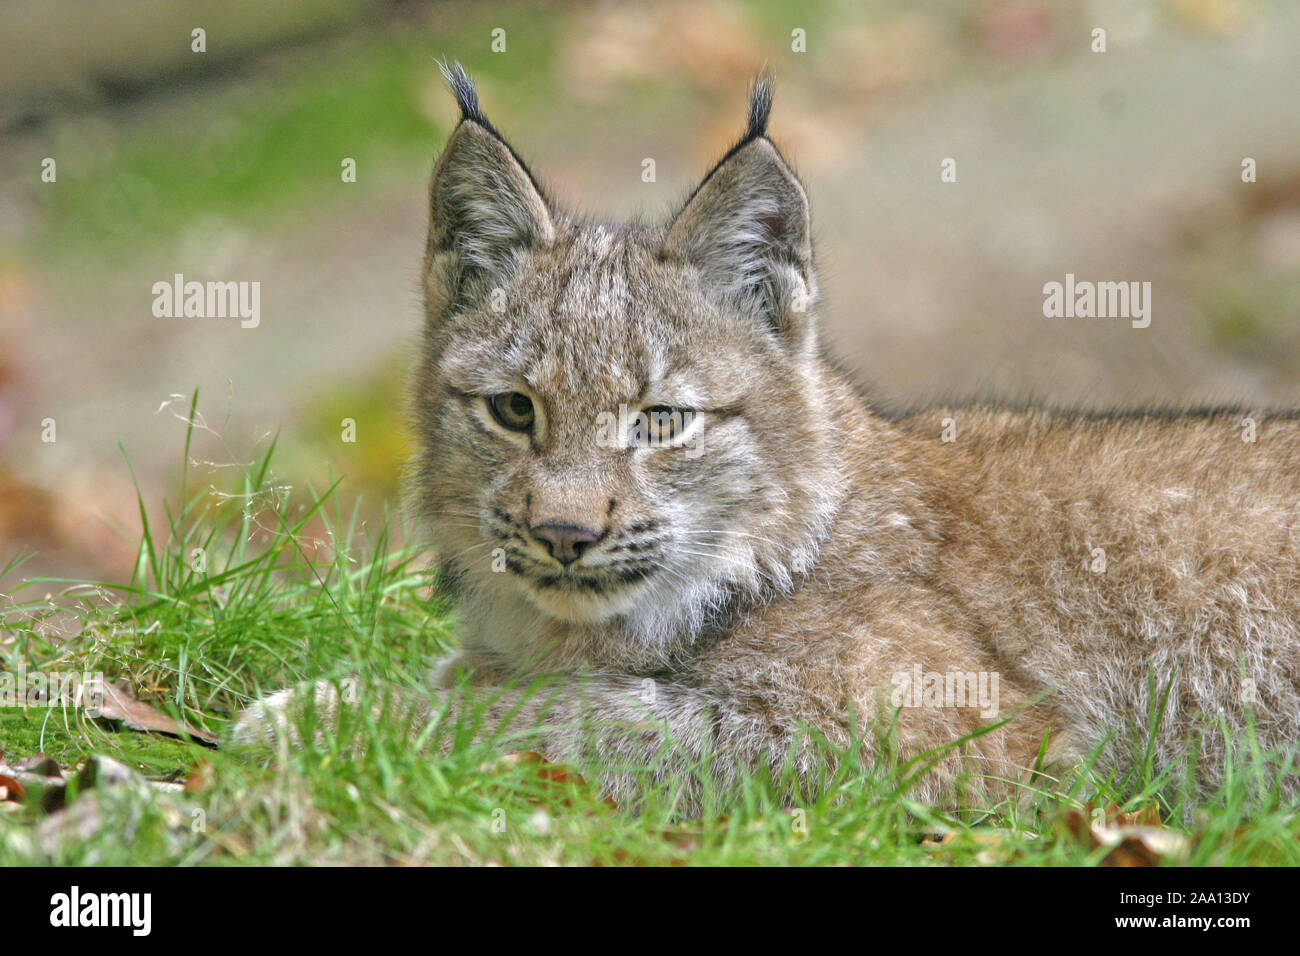 Junger Luchs (Lynx lynx) liegt im Gras, Tierpark Weilburg, Hessen, Deutschland / Jung lynx (Lynx lynx) is lieing in the gras, captive Stock Photo